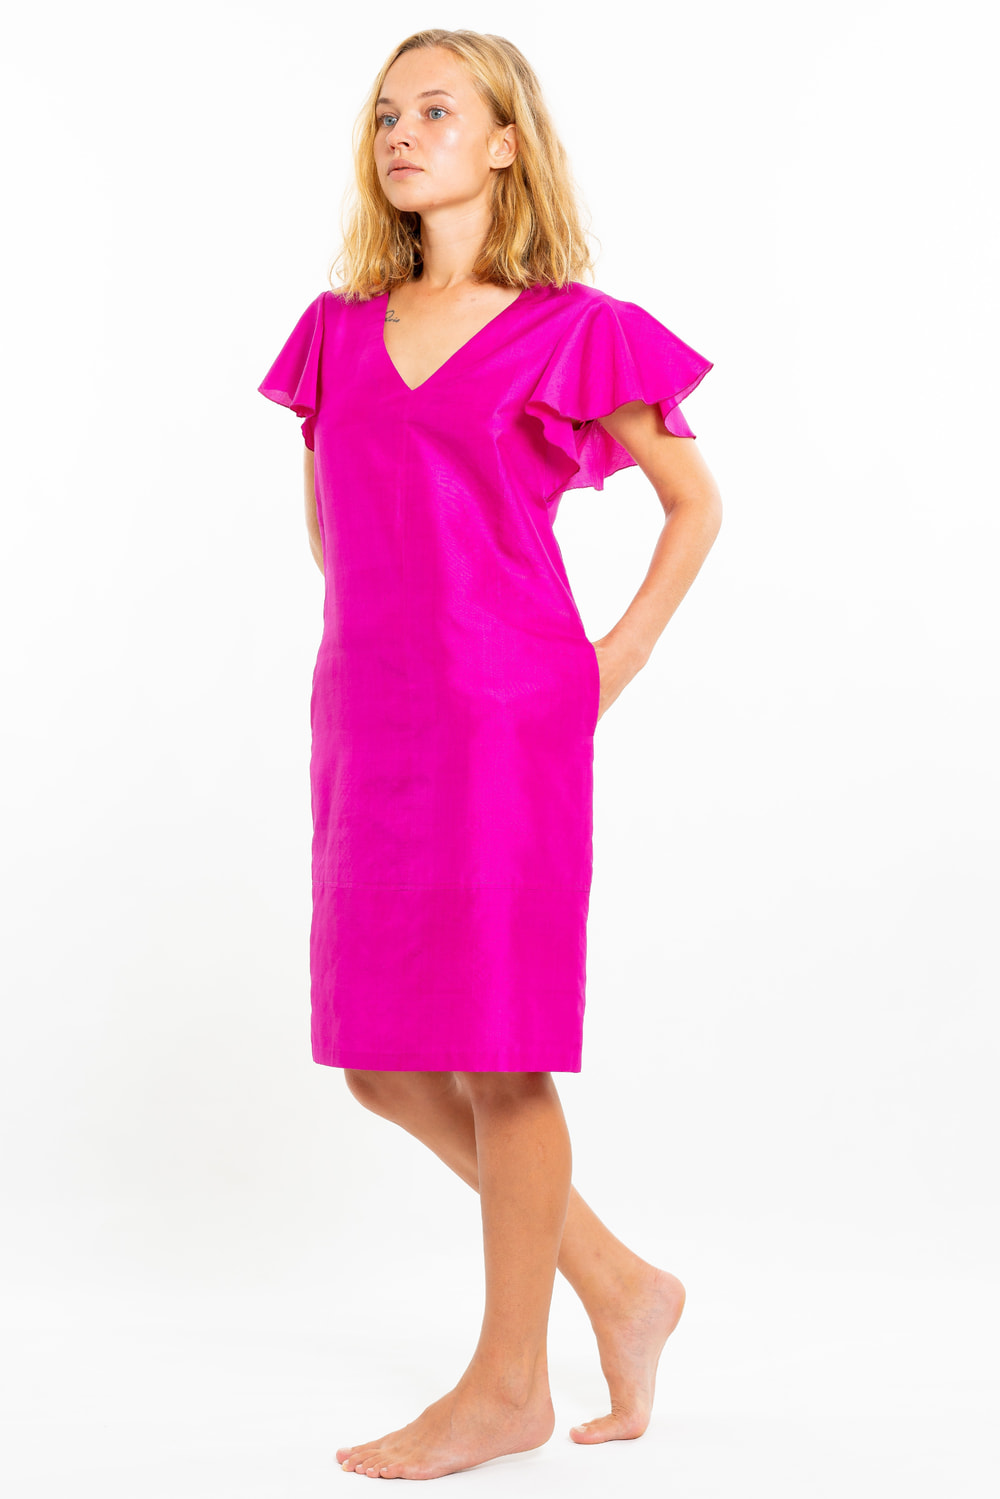 robe en soie naturelle rose, manches courtes à volants, col V